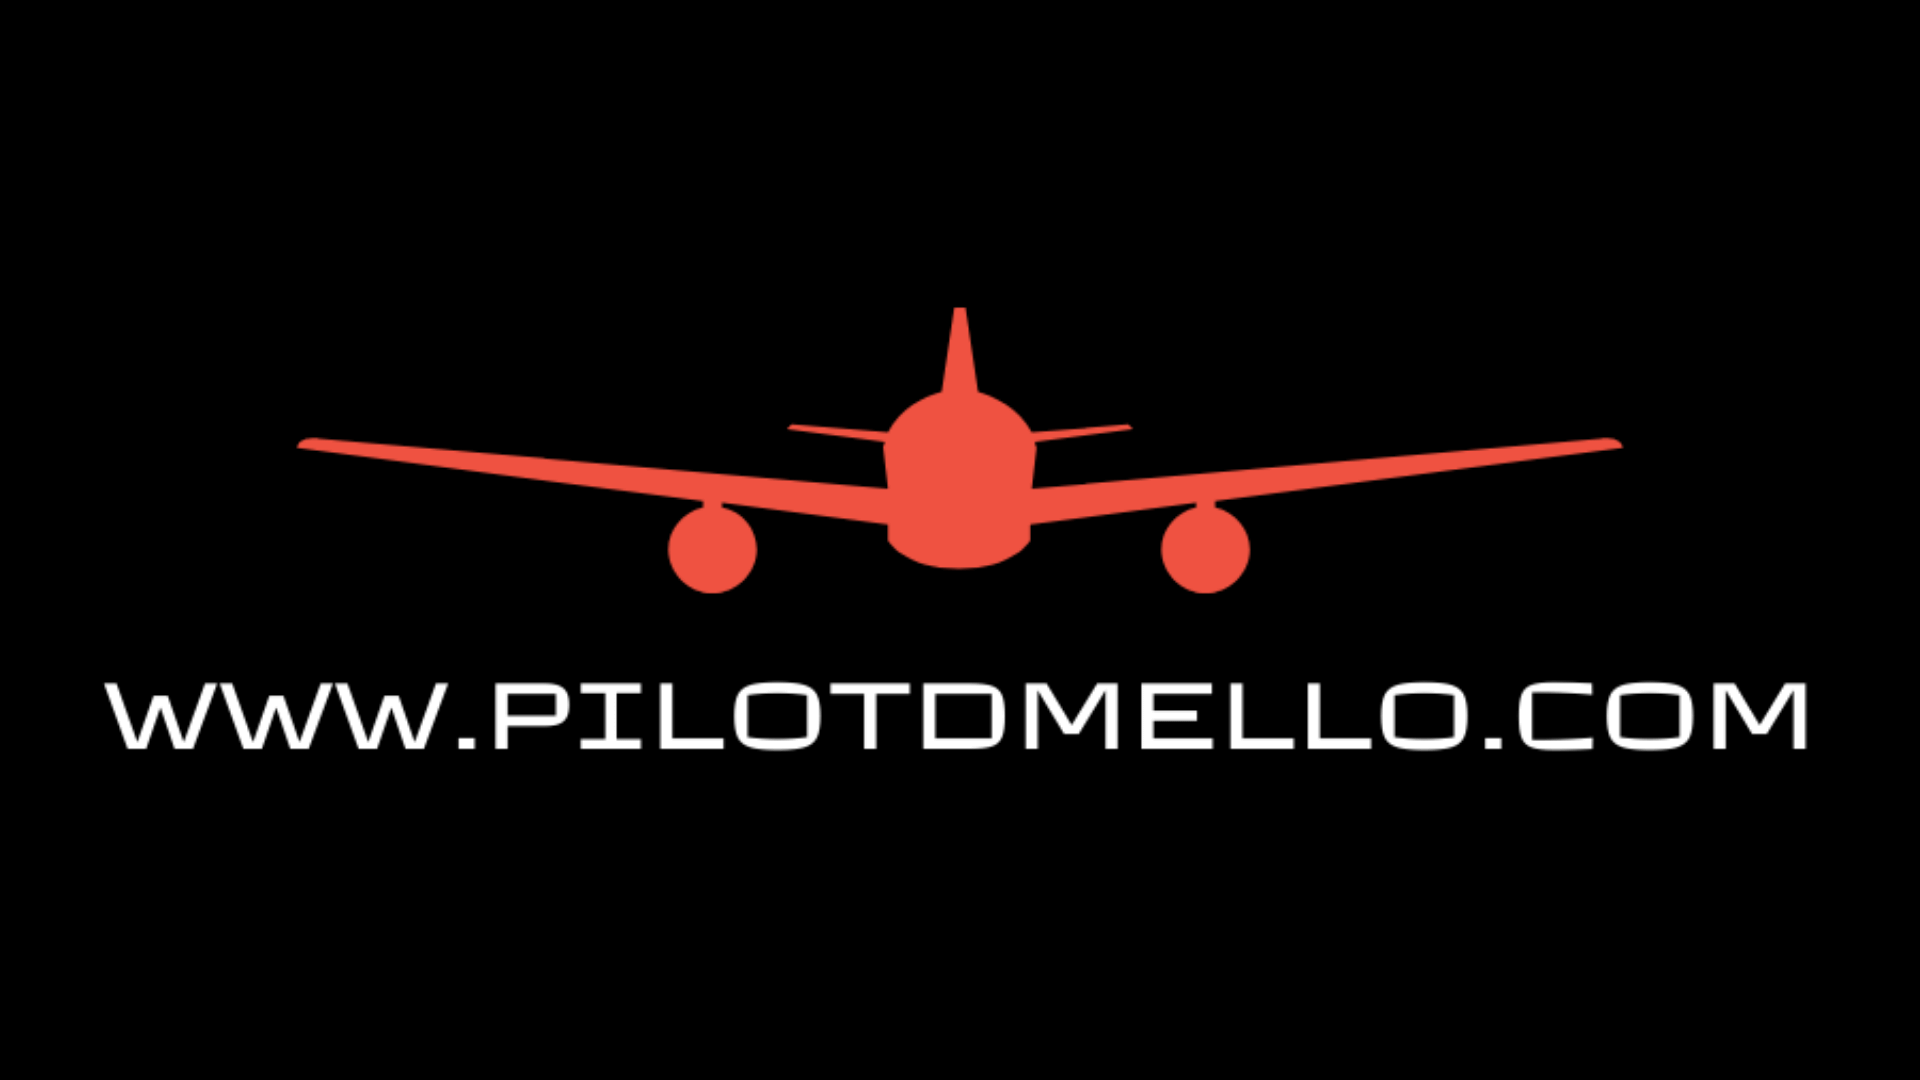 PilotDmello.com